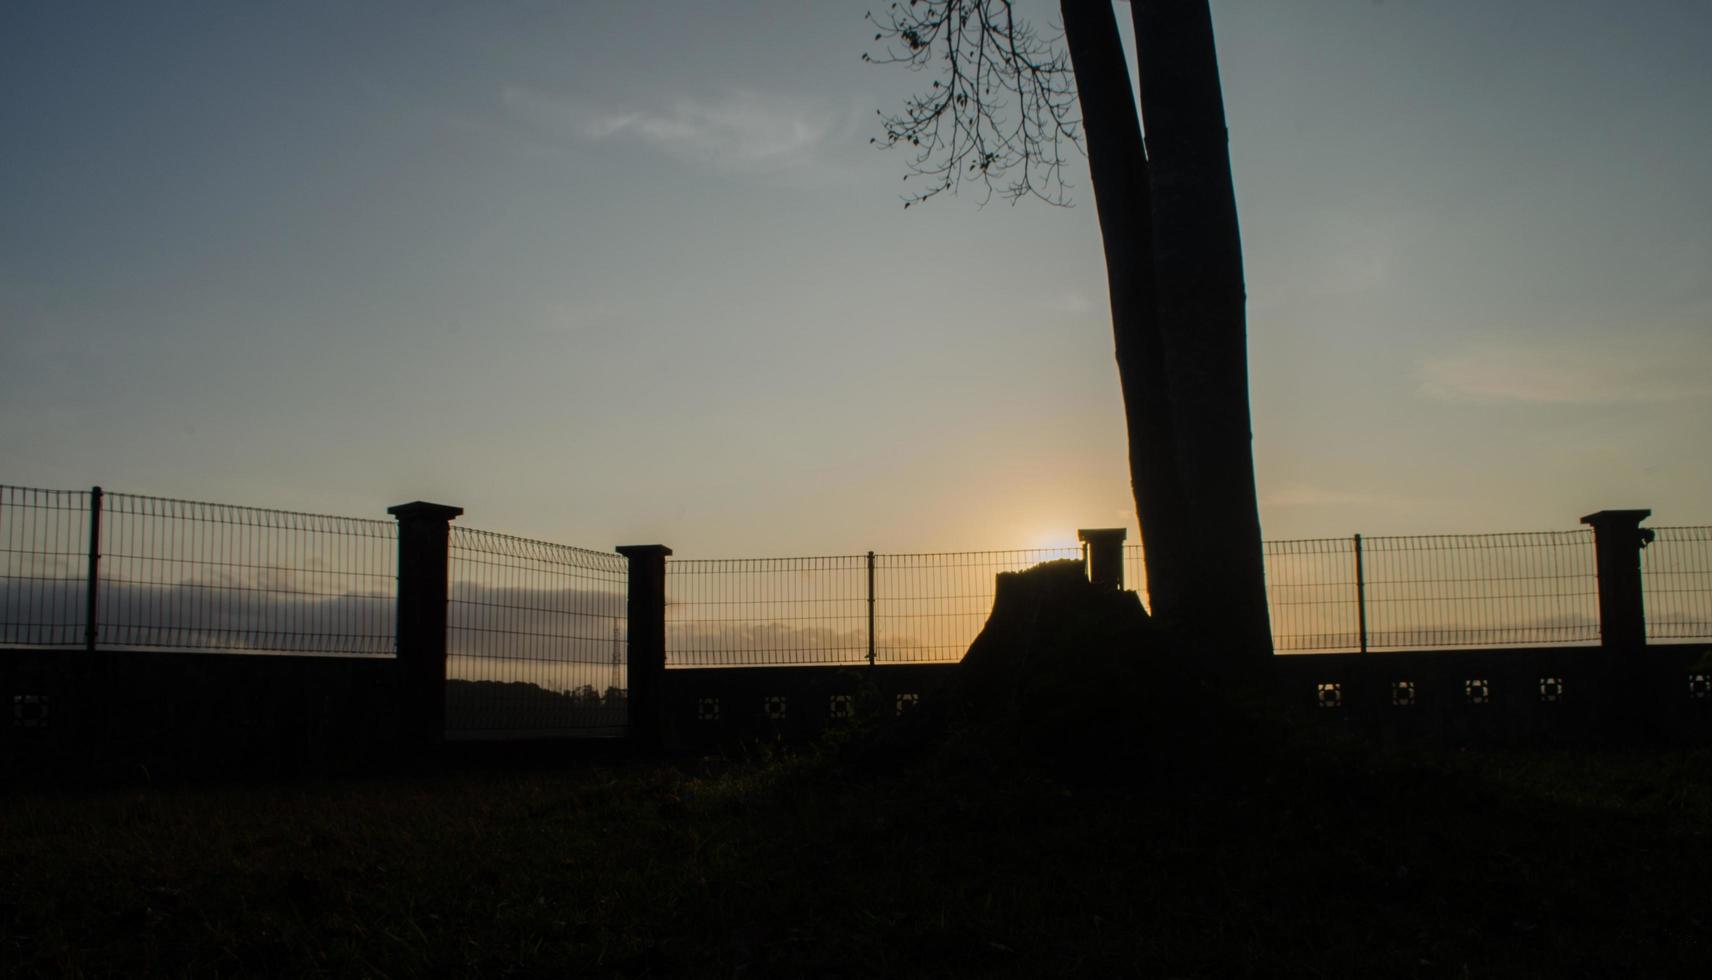 la silueta de la barandilla, árboles y piedras de espaldas al sol de la mañana. paisaje de silueta,vista amplia, panorámica foto